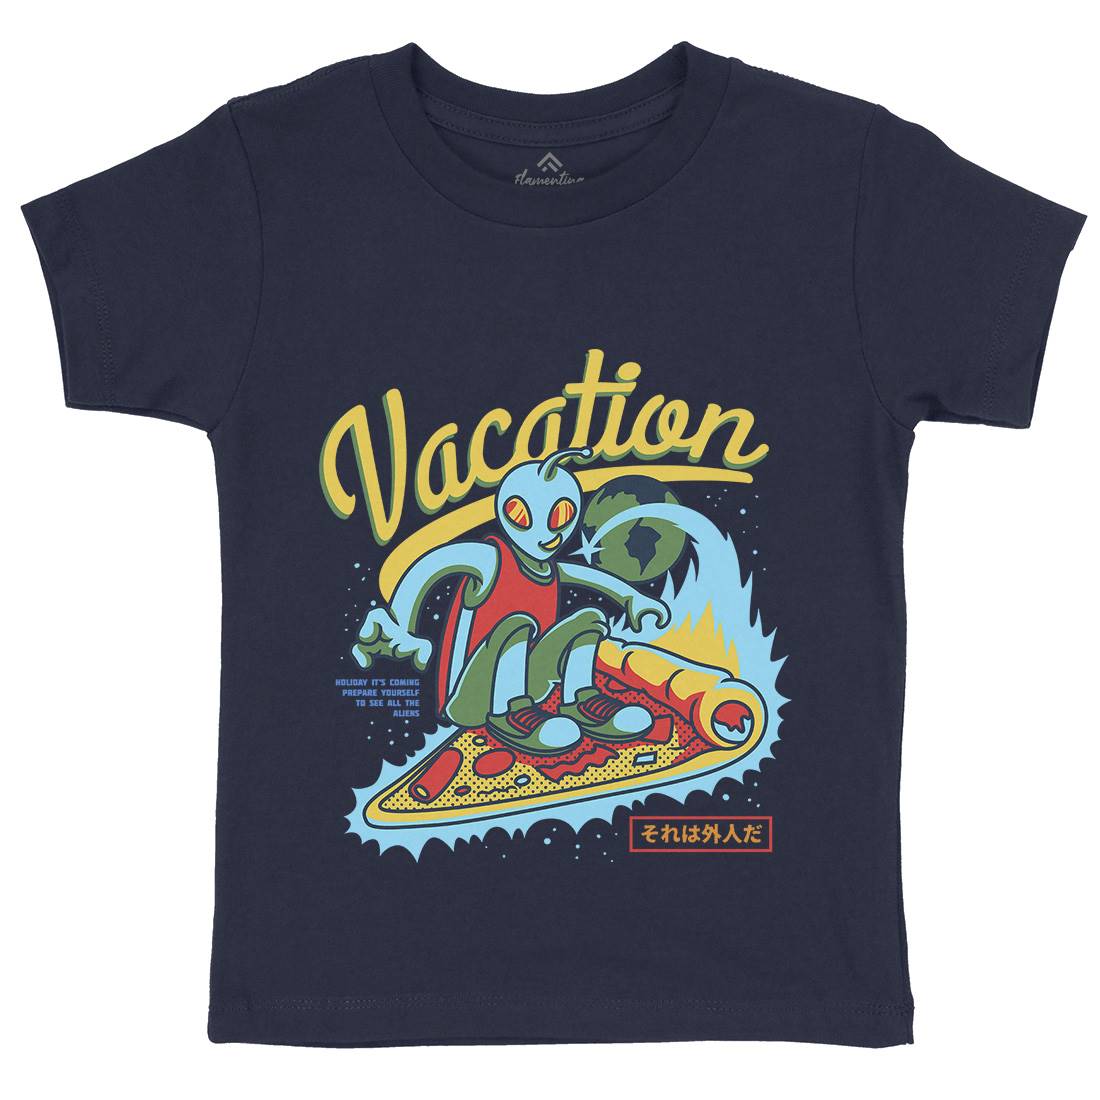 Vacation Mode Kids Crew Neck T-Shirt Surf D871